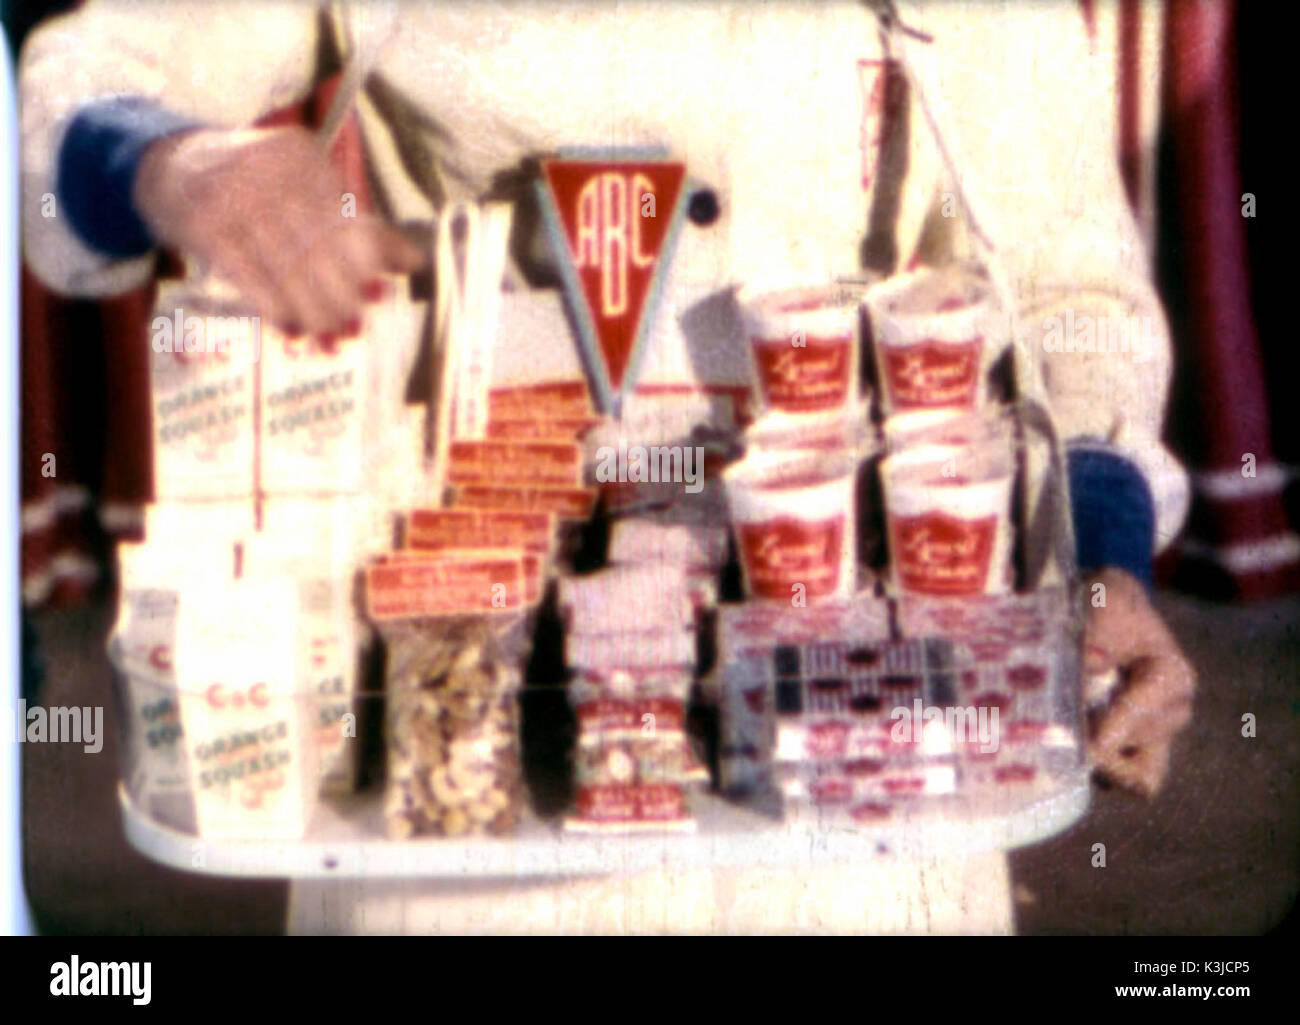 La ragazza con il vassoio - un usherette commessa di vendita di gelato, dadi, bevande e dolciumi dal vassoio. Da anni cinquanta ABC Cinema filmlet vendite Foto Stock